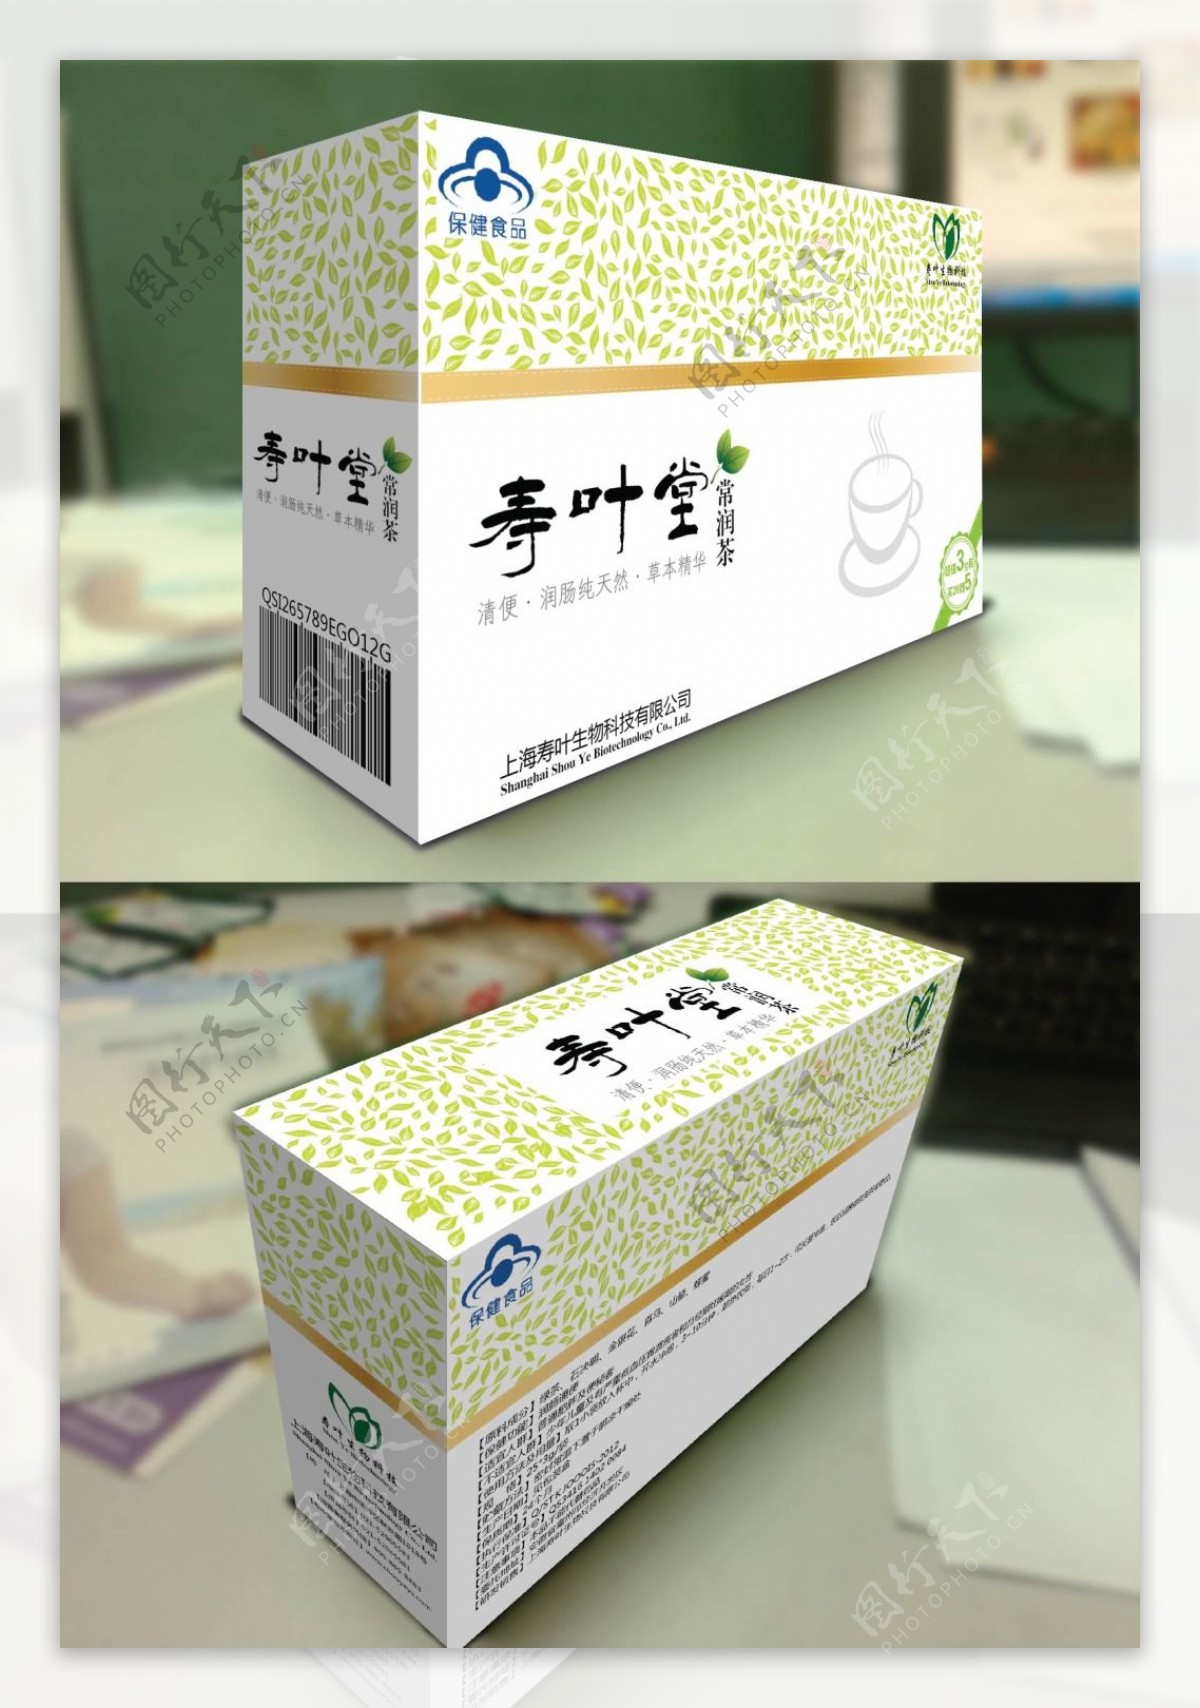 常润茶西药包装设计盒子图片下载